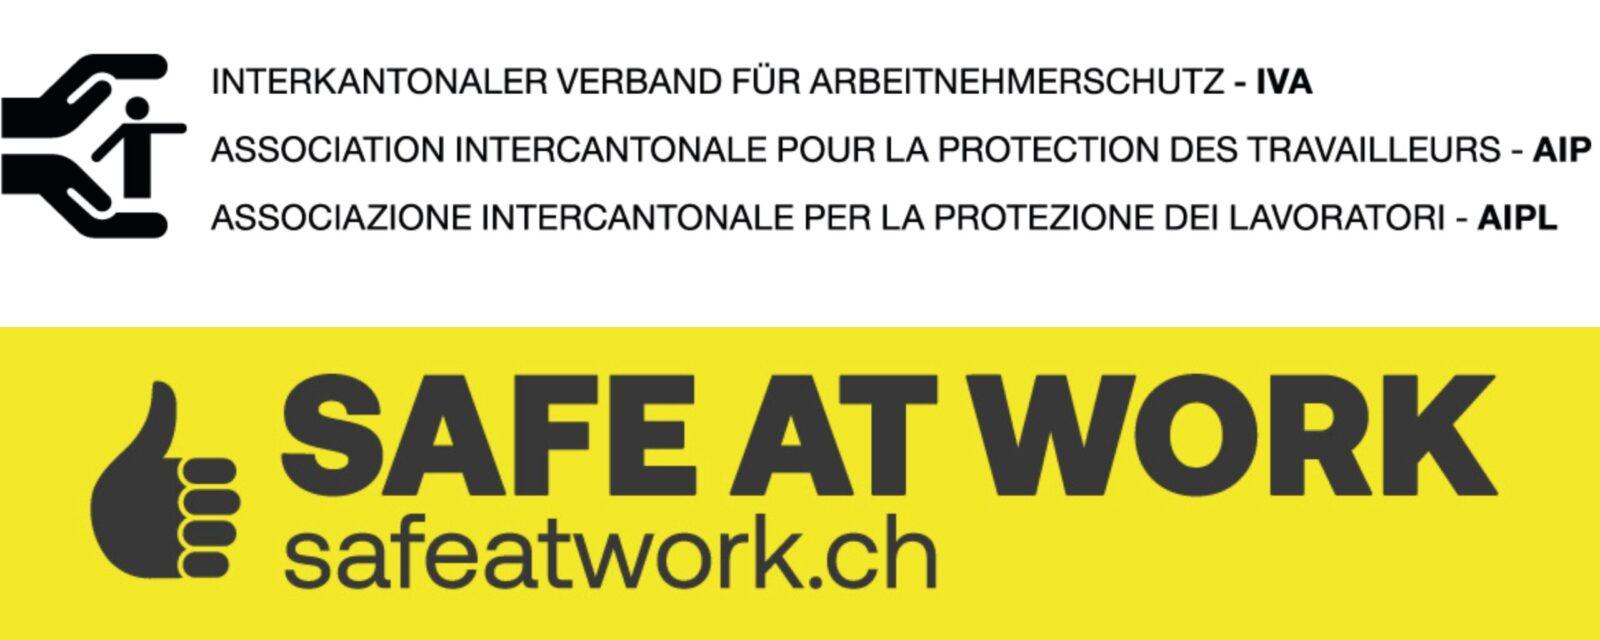 Interkantonaler Verband für 
Arbeitnehmerschutz – IVA